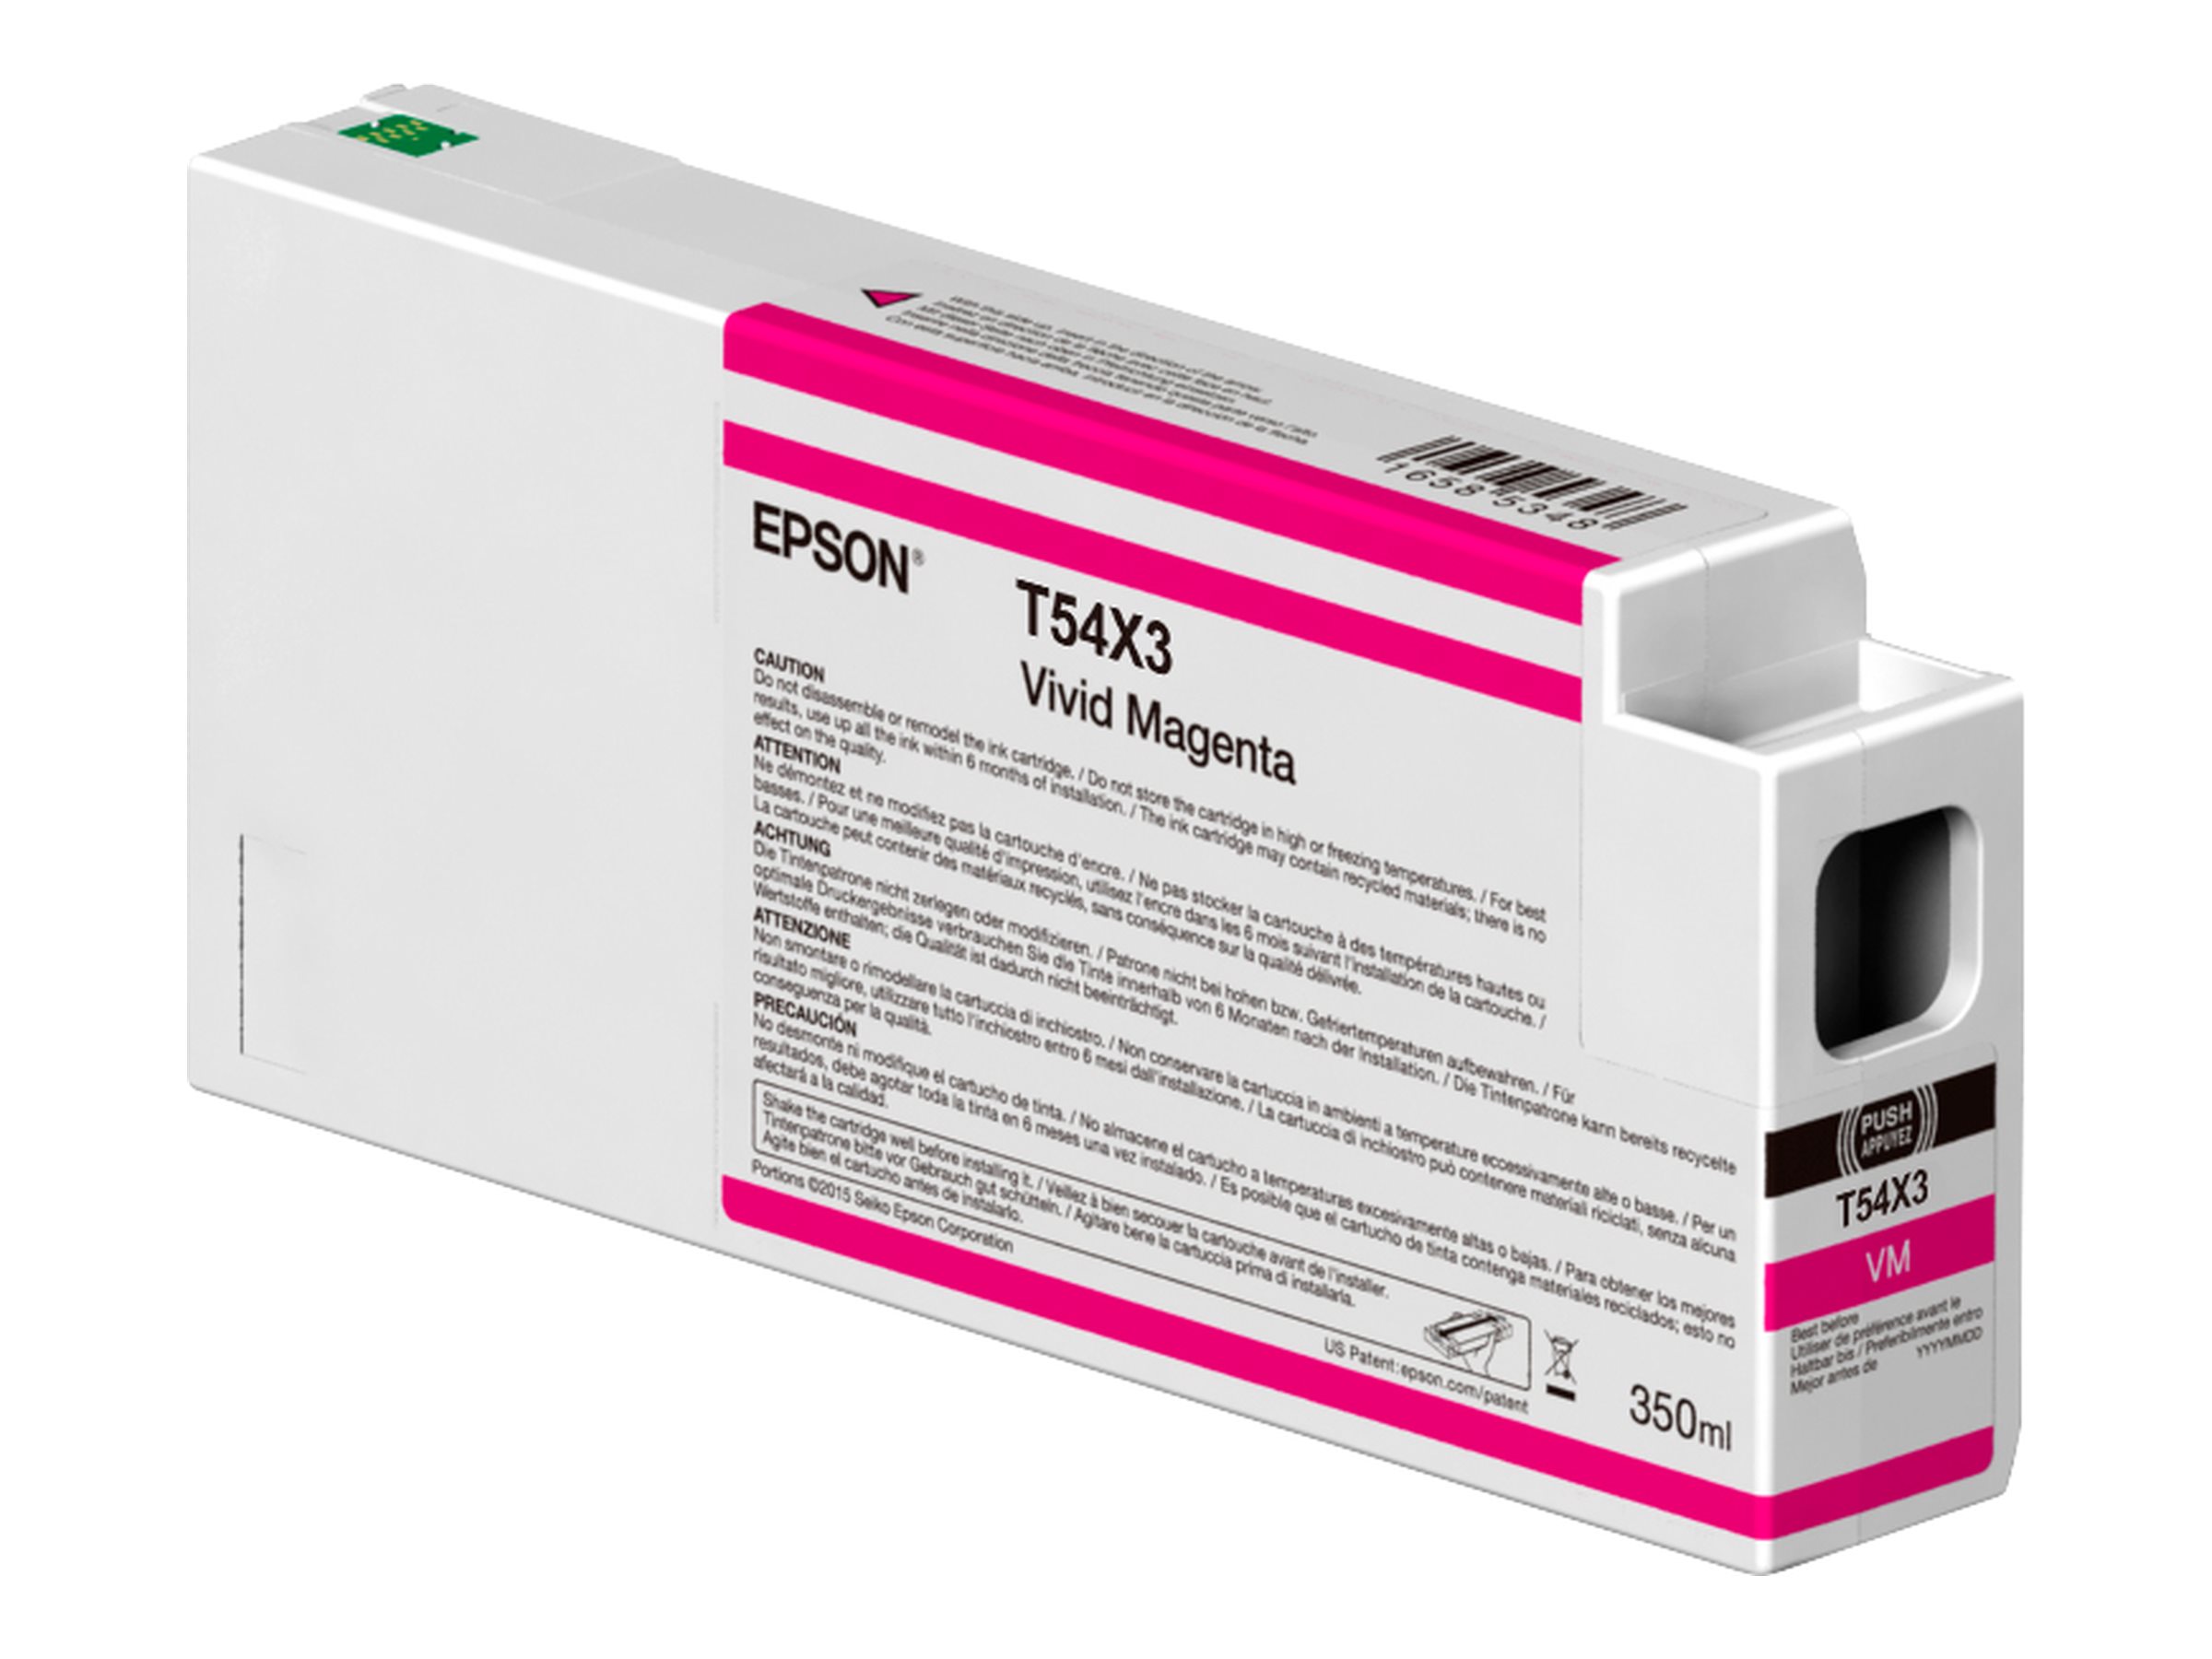 Epson T54X3 - 350 ml - Magenta vif - original - cartouche d'encre - pour SureColor SC-P6000, SC-P7000, SC-P7000V, SC-P8000, SC-P9000, SC-P9000V - C13T54X30N - Cartouches d'imprimante